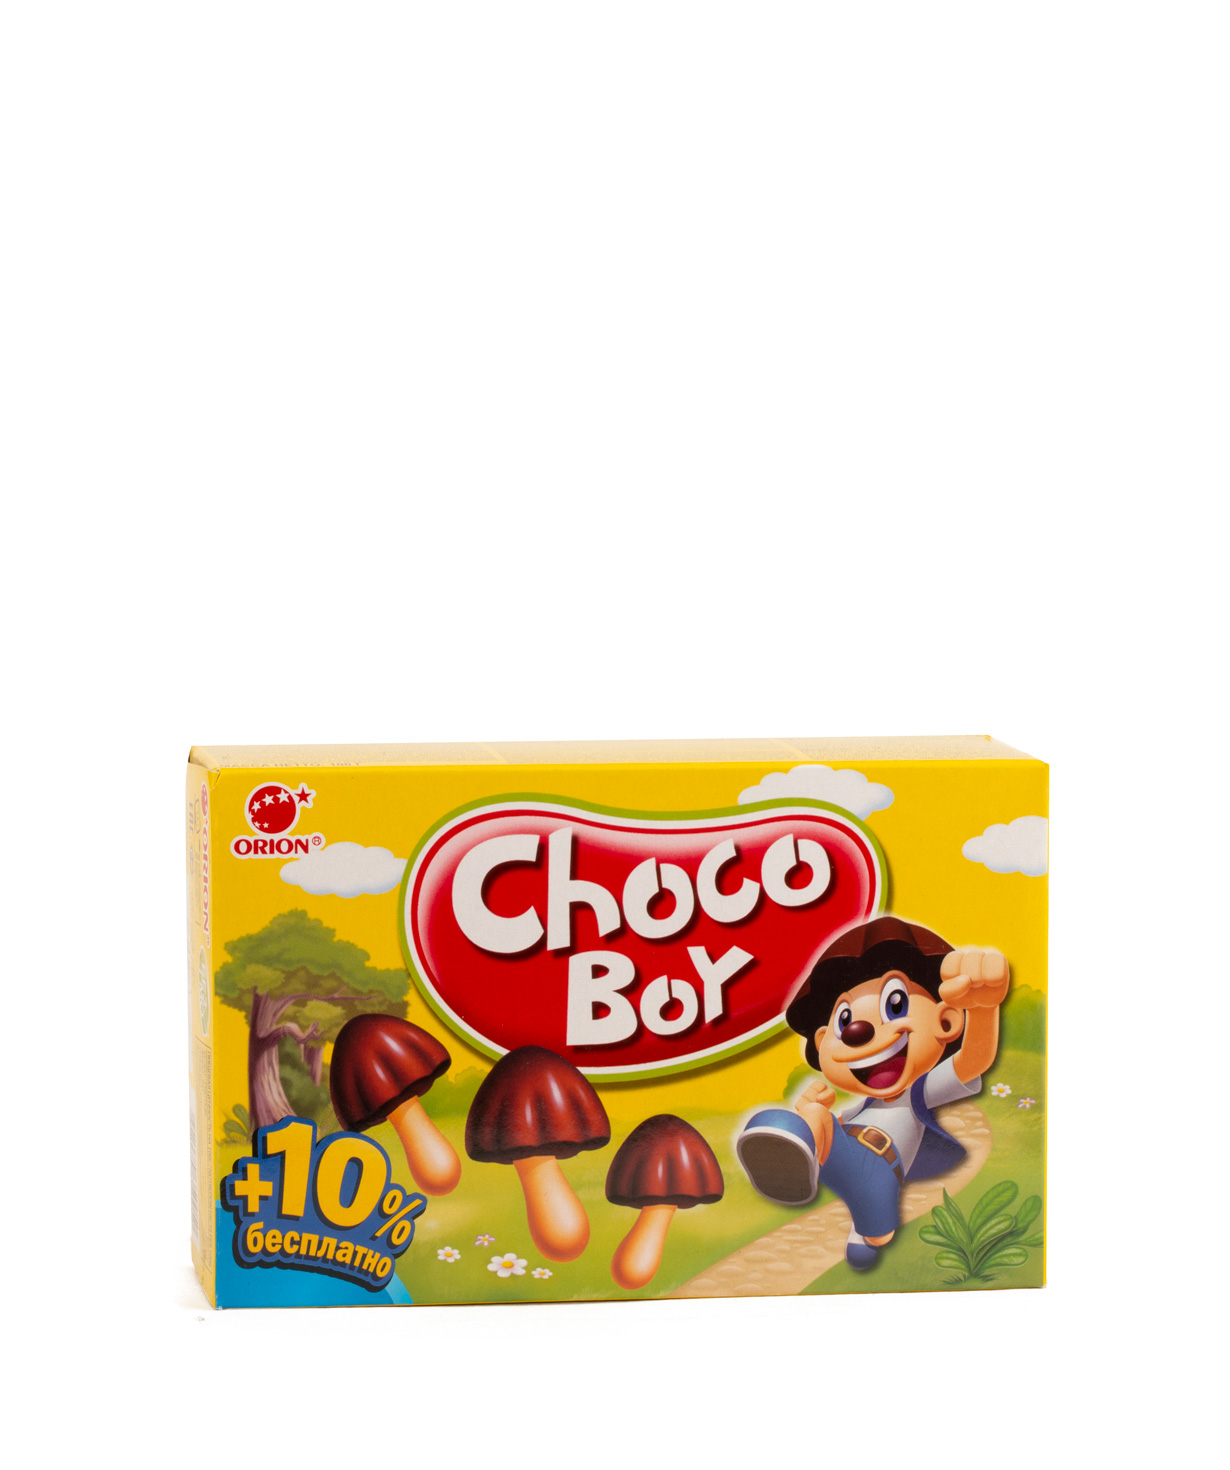 Թխվածքաբլիթ «Chocoboy» 100գ